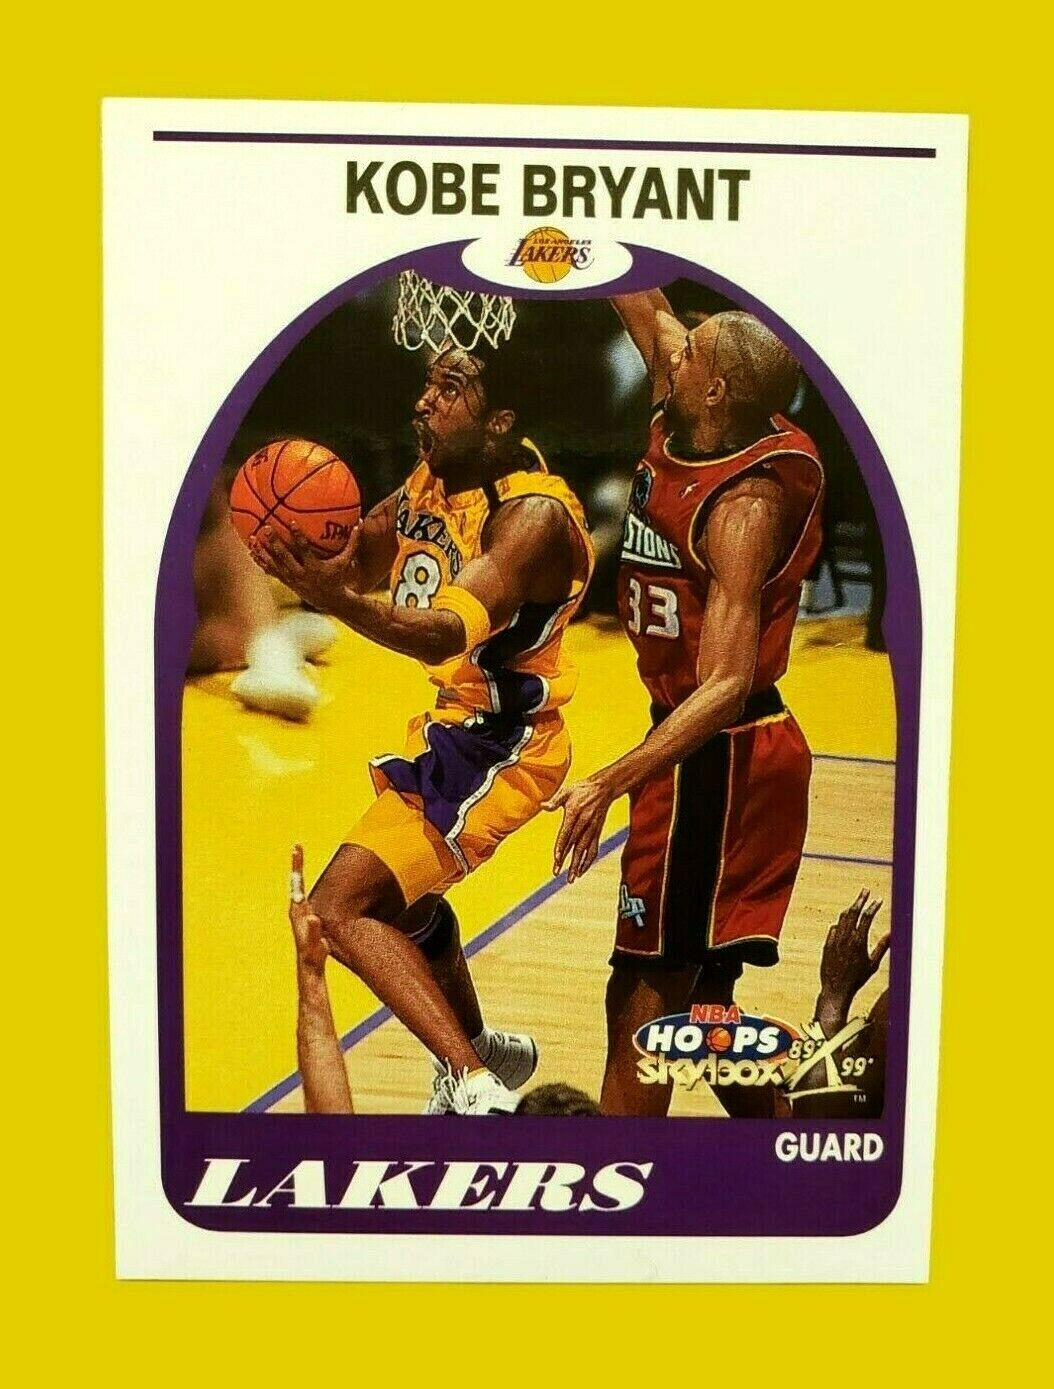 Kobe Bryant 2000 FLEER NBA Hoops Skybox Card #150 Los Angeles Lakers